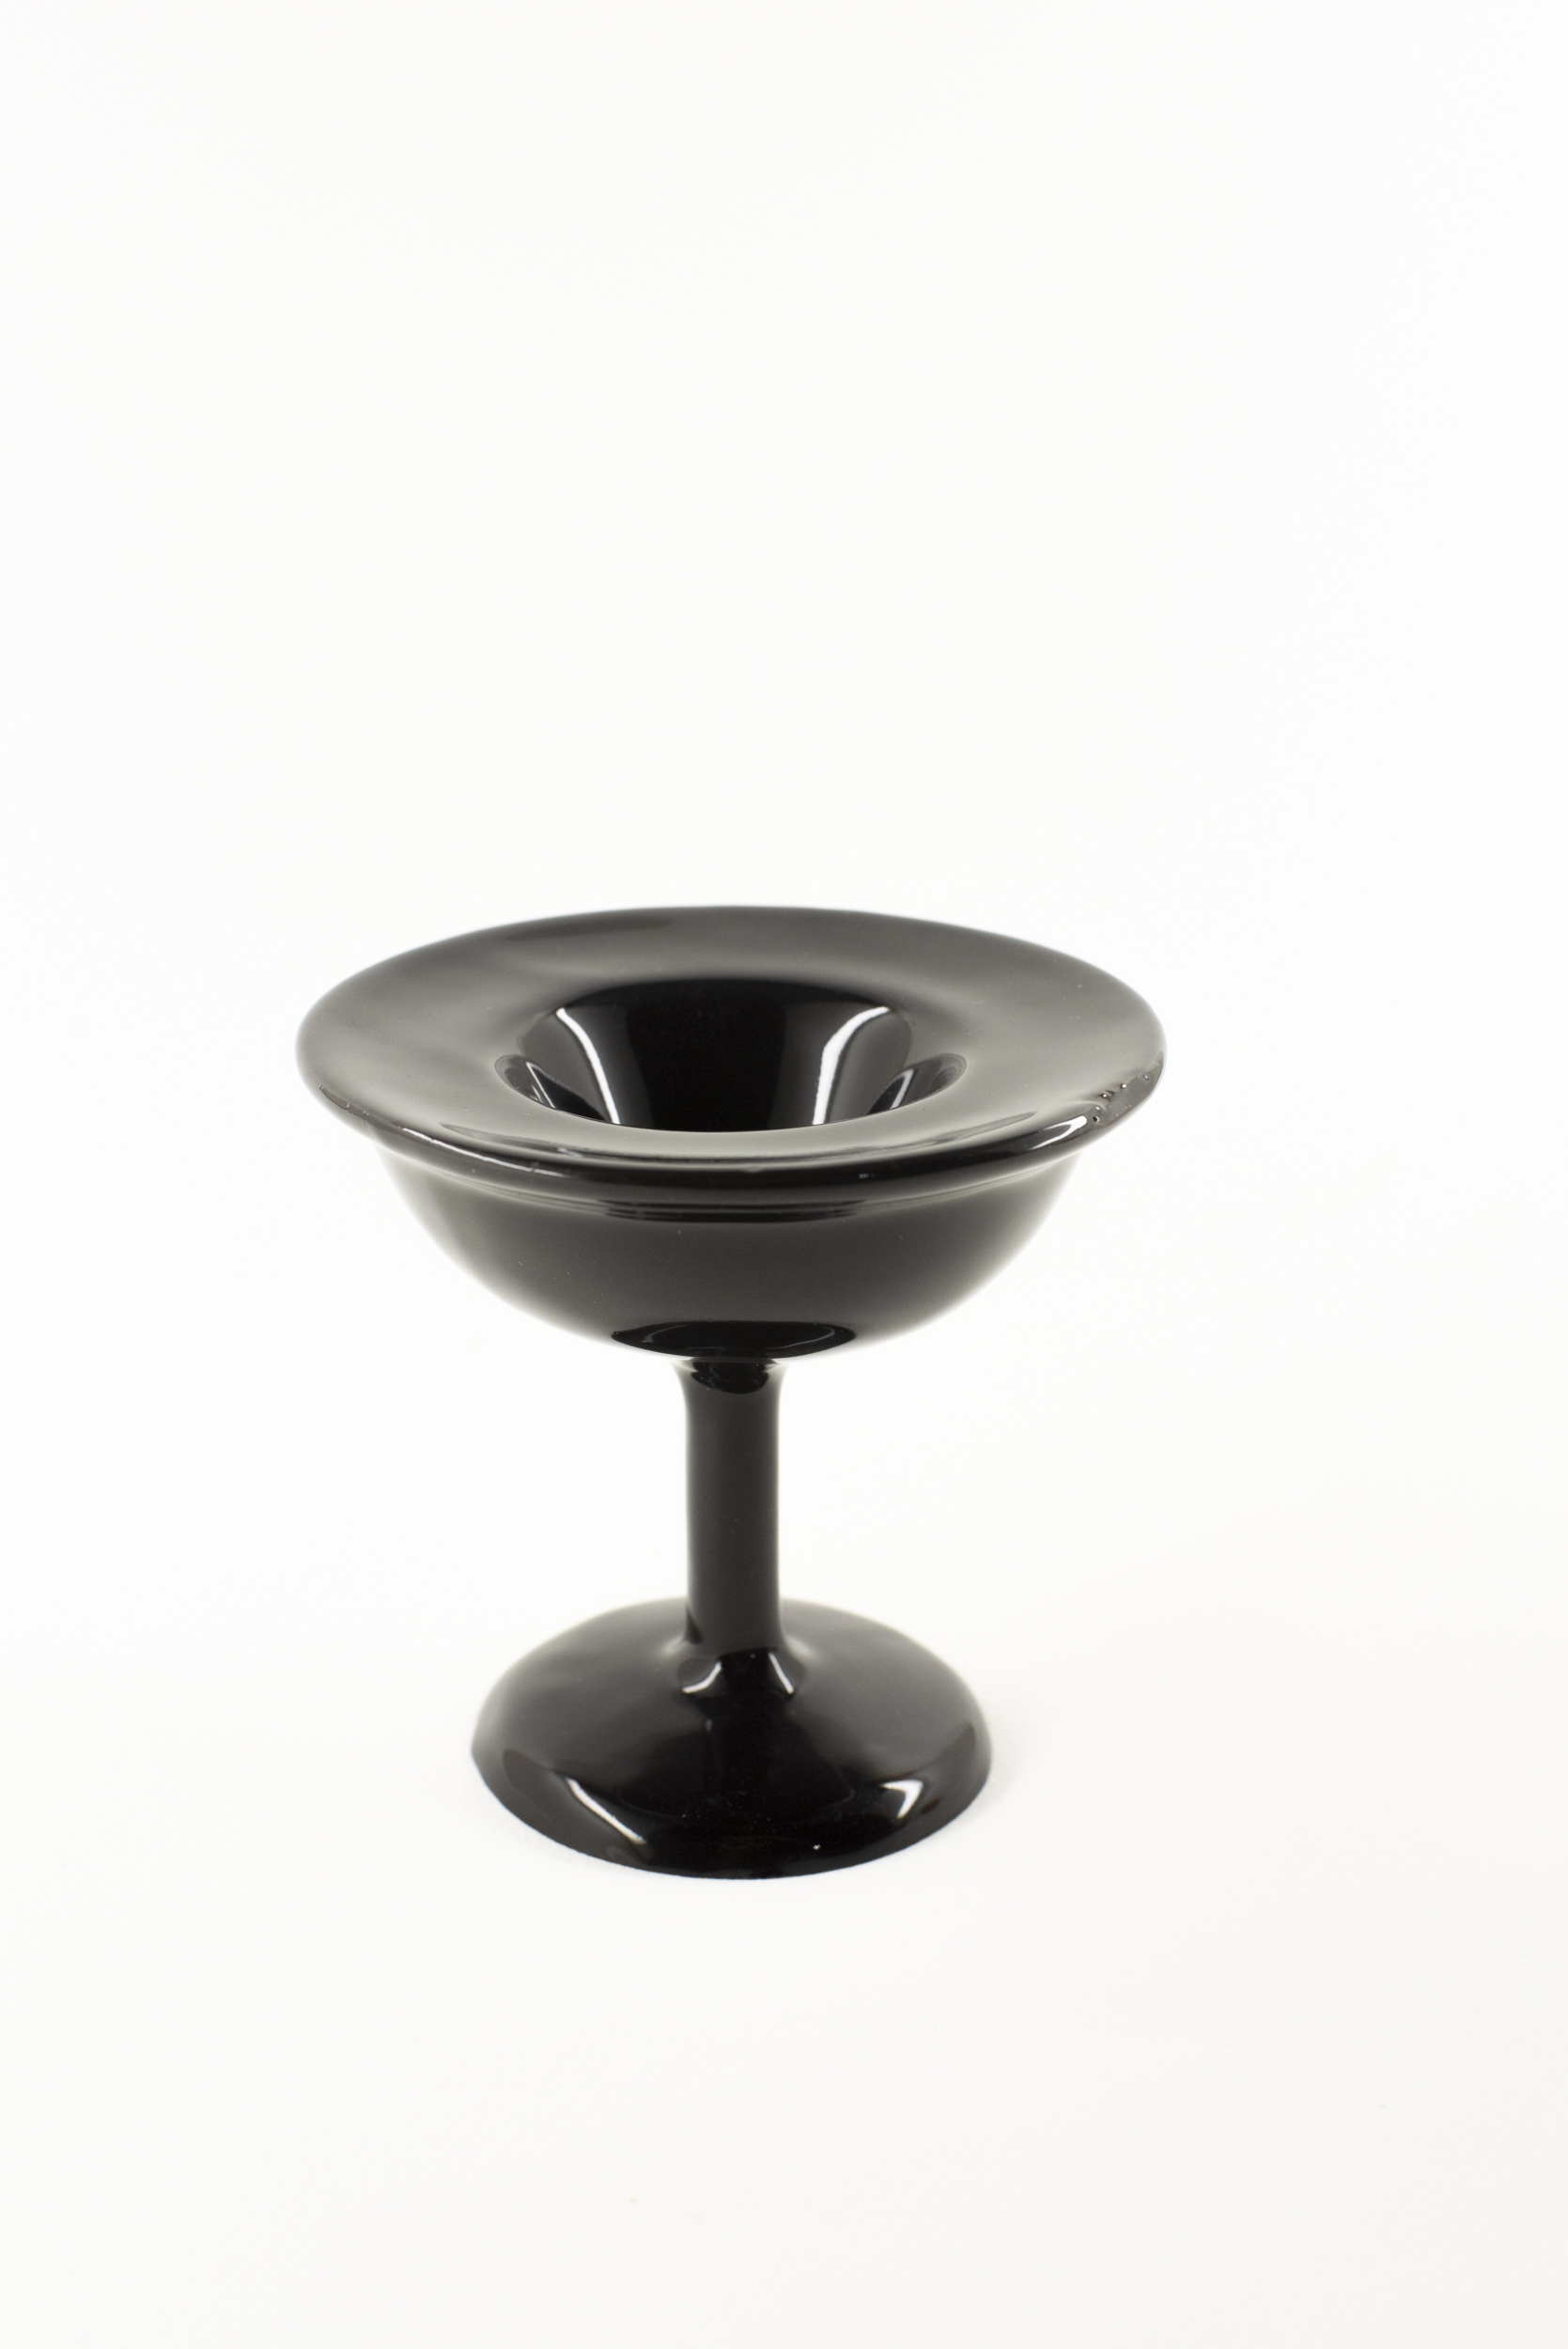 Ceramic designer black egg cup